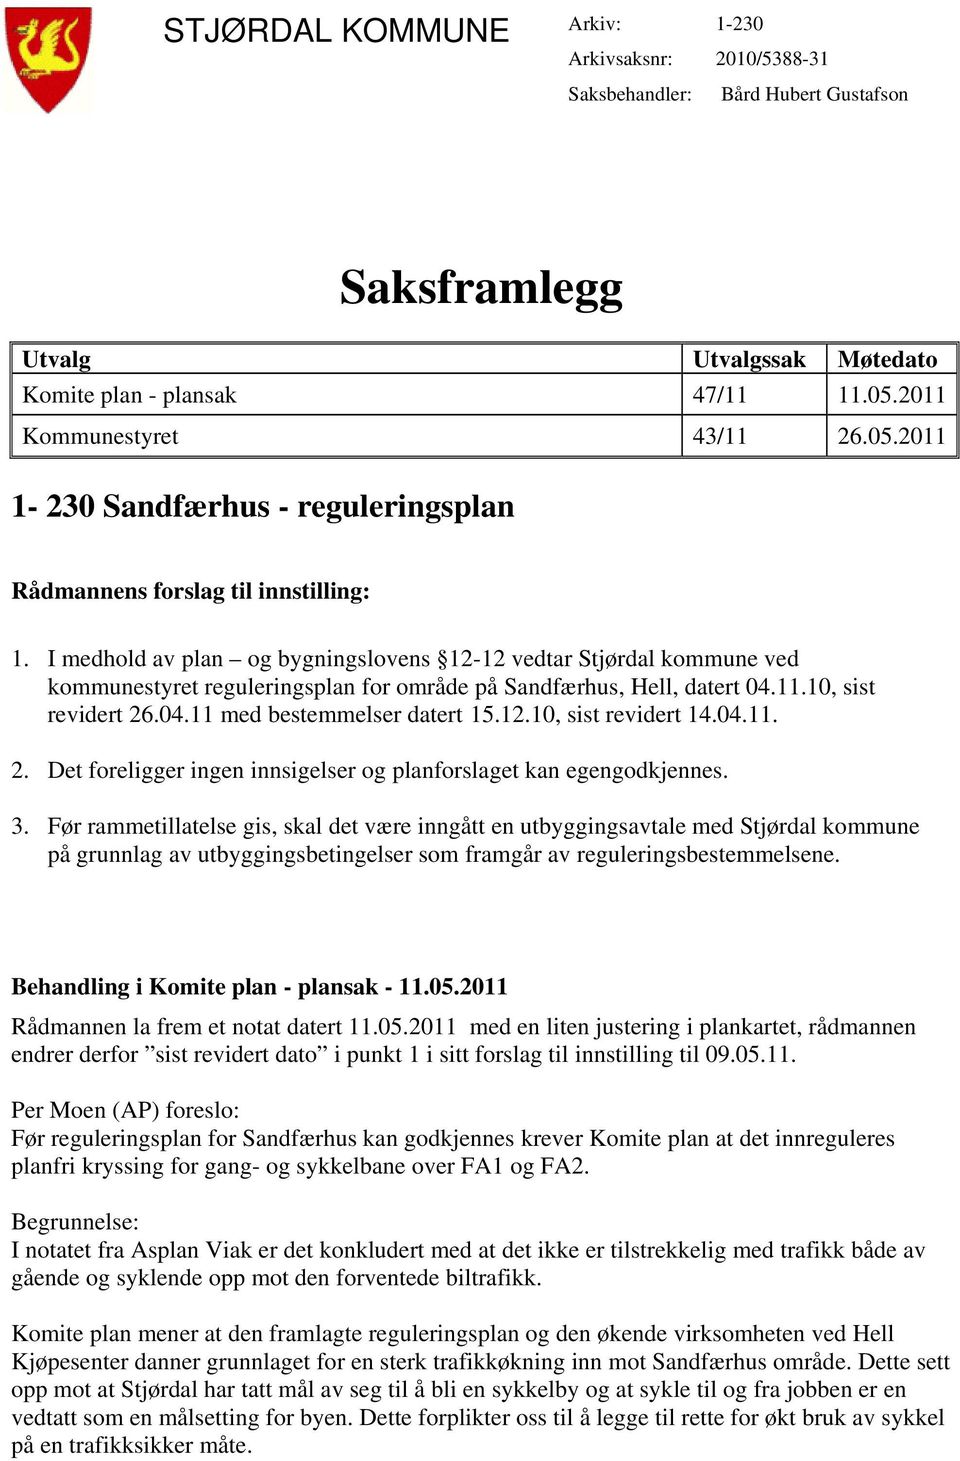 I medhold av plan og bygningslovens 12-12 vedtar Stjørdal kommune ved kommunestyret reguleringsplan for område på Sandfærhus, Hell, datert 04.11.10, sist revidert 26.04.11 med bestemmelser datert 15.